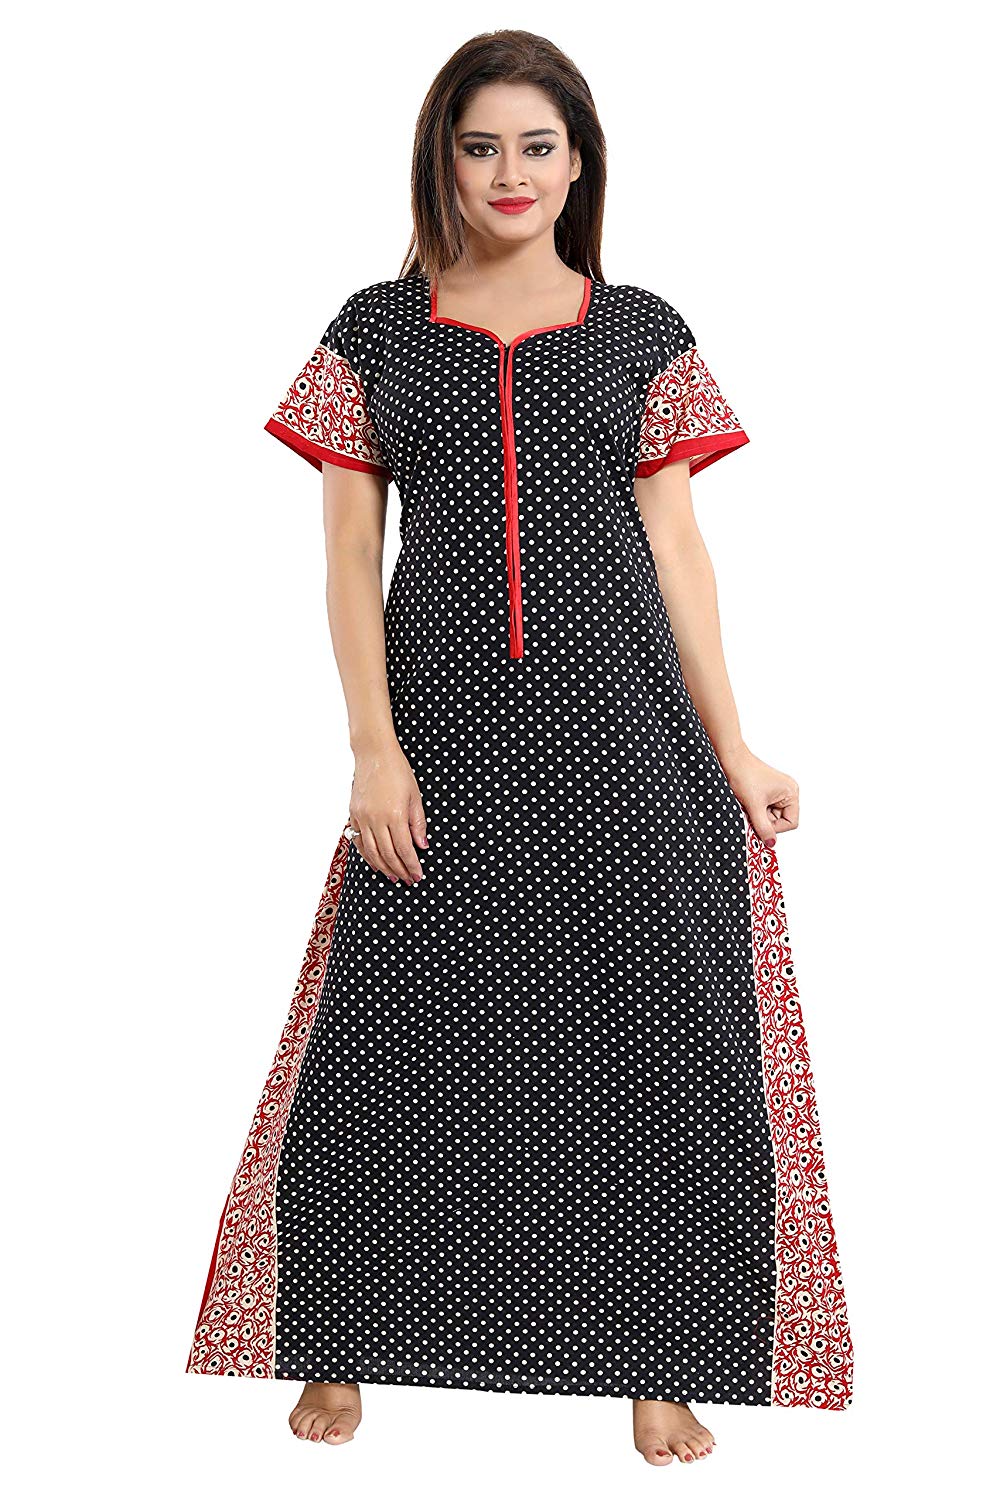 Buy SHREE BALAJI MAXI Women's Sarina Full-Flare Nighty with Long  Sleeves/Night Gown/Nightwear/Nightdress (Brown, Satin) at Amazon.in